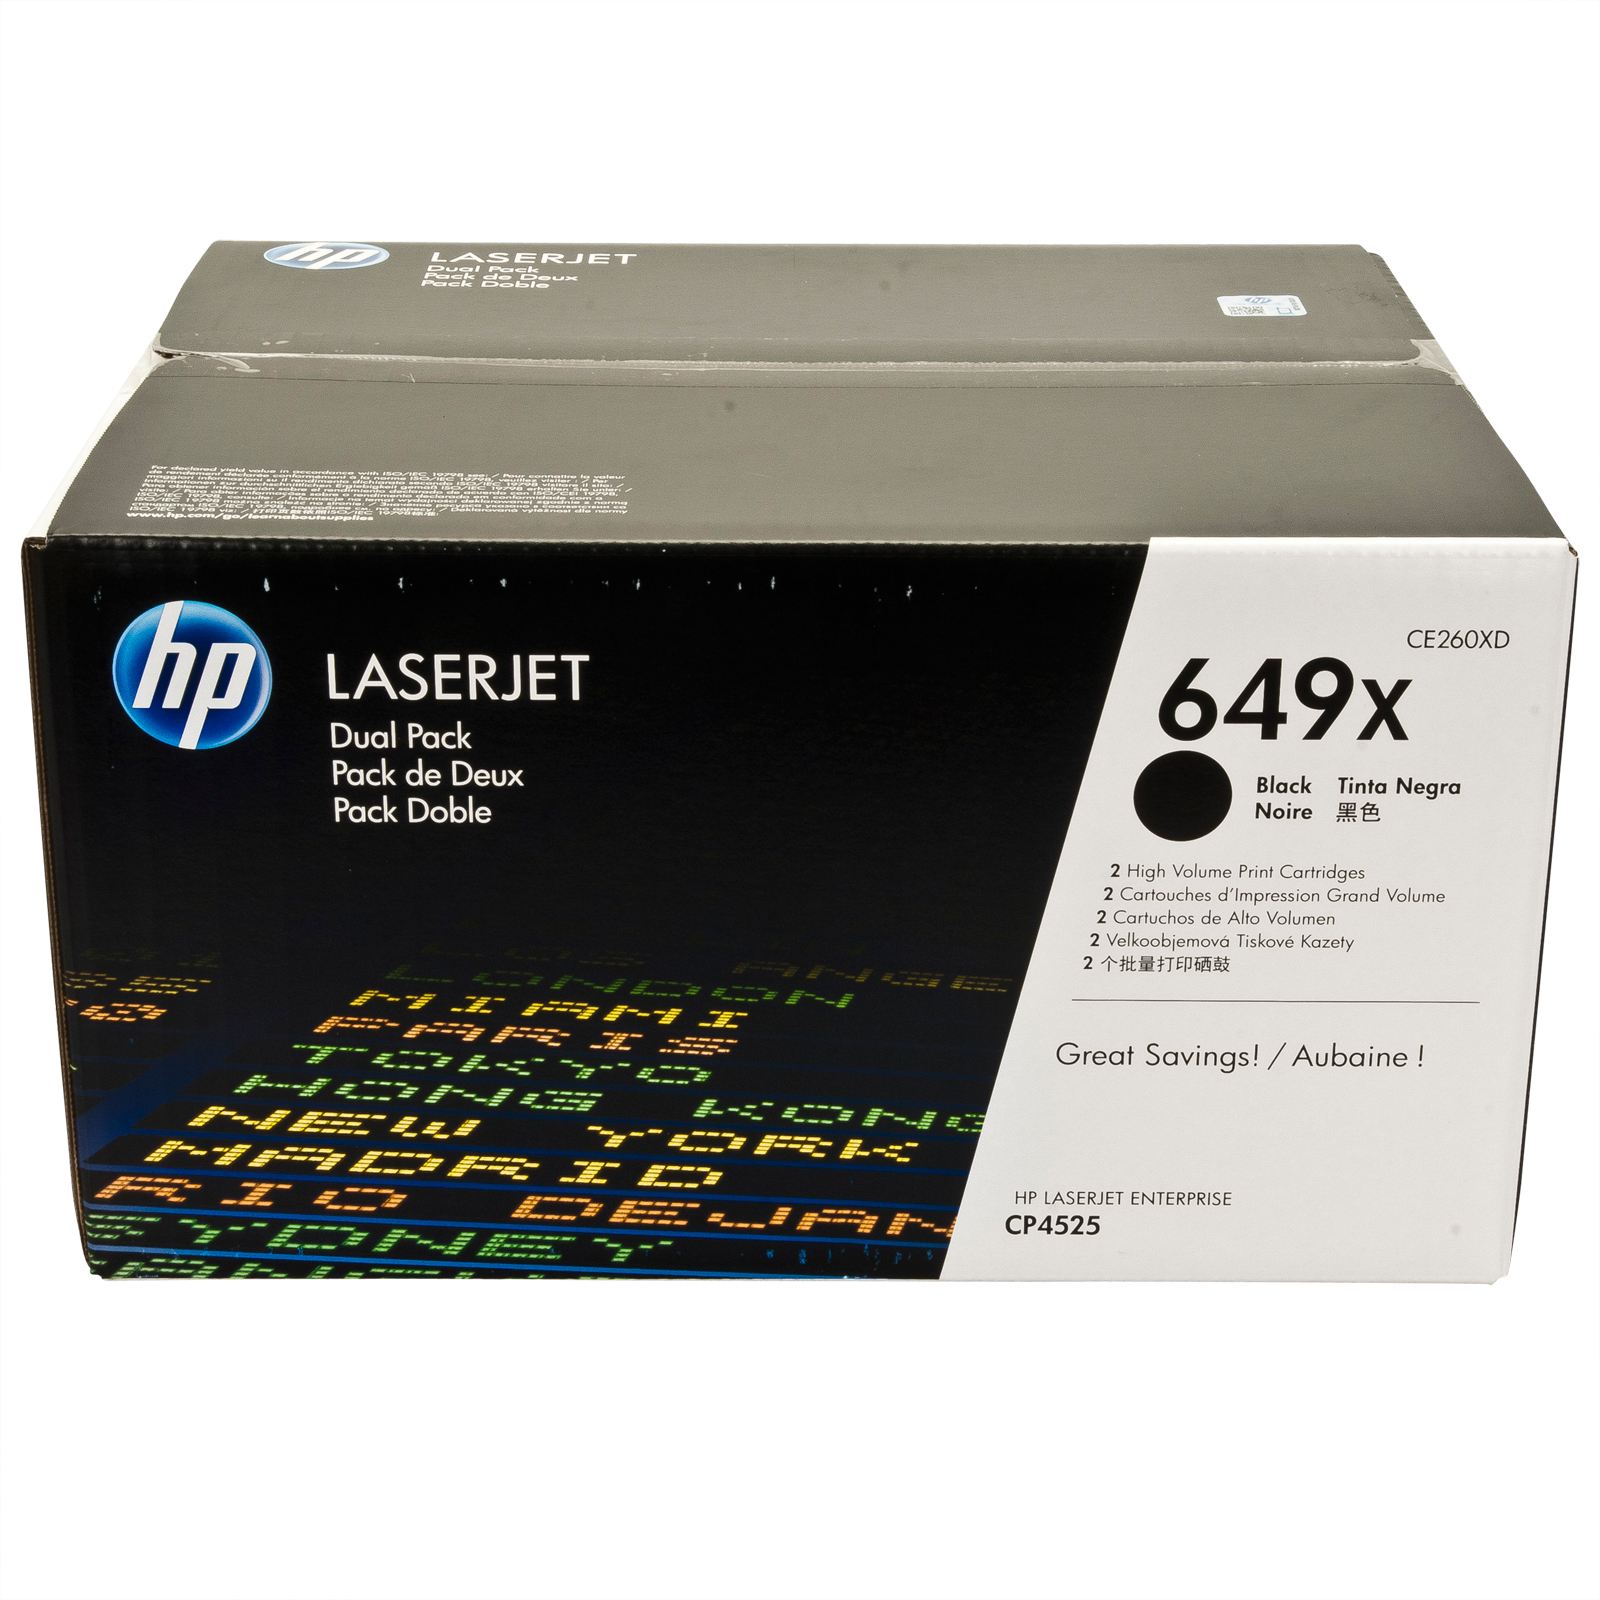 Комплект картриджей HP CE260XD 649X оригинальный чёрный для принтеров LaserJet Enterprise CP4525